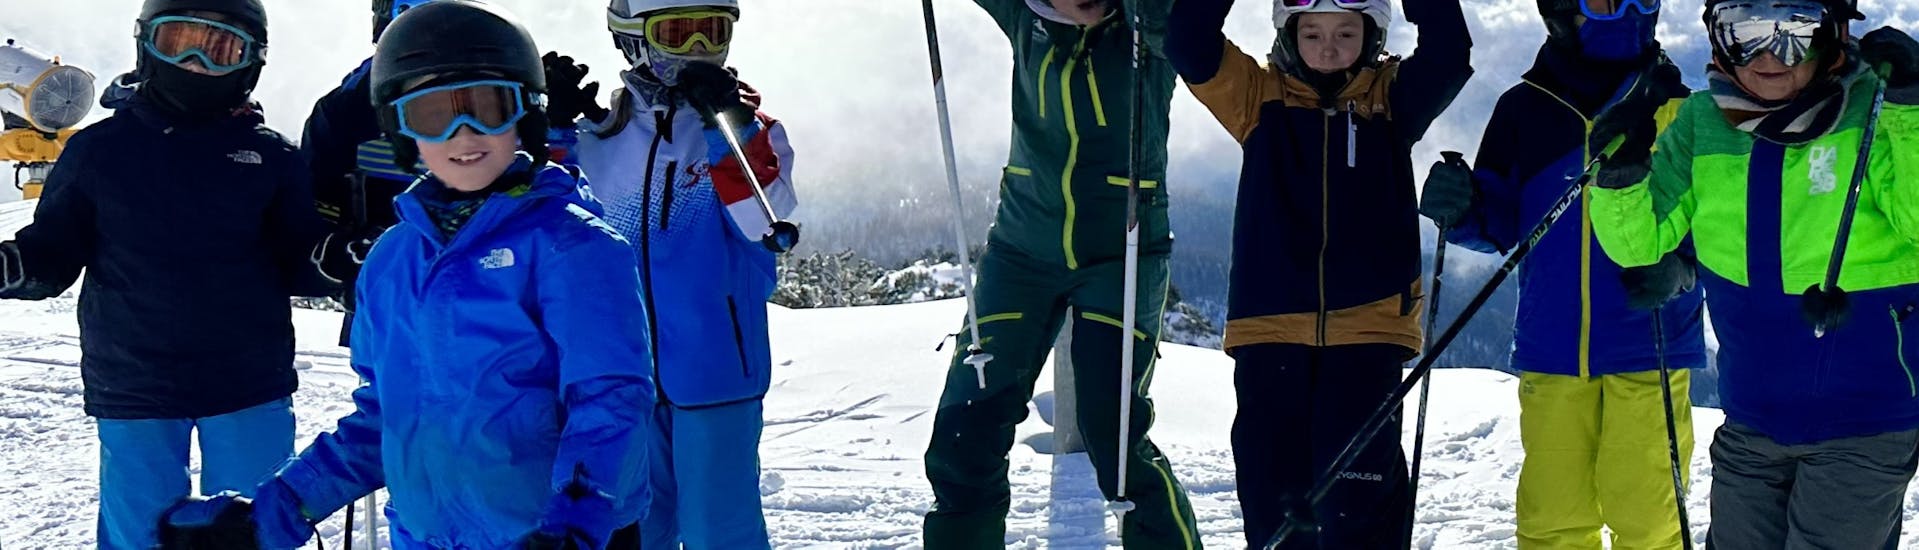 Skilessen voor kinderen vanaf 4 jaar - ervaren.